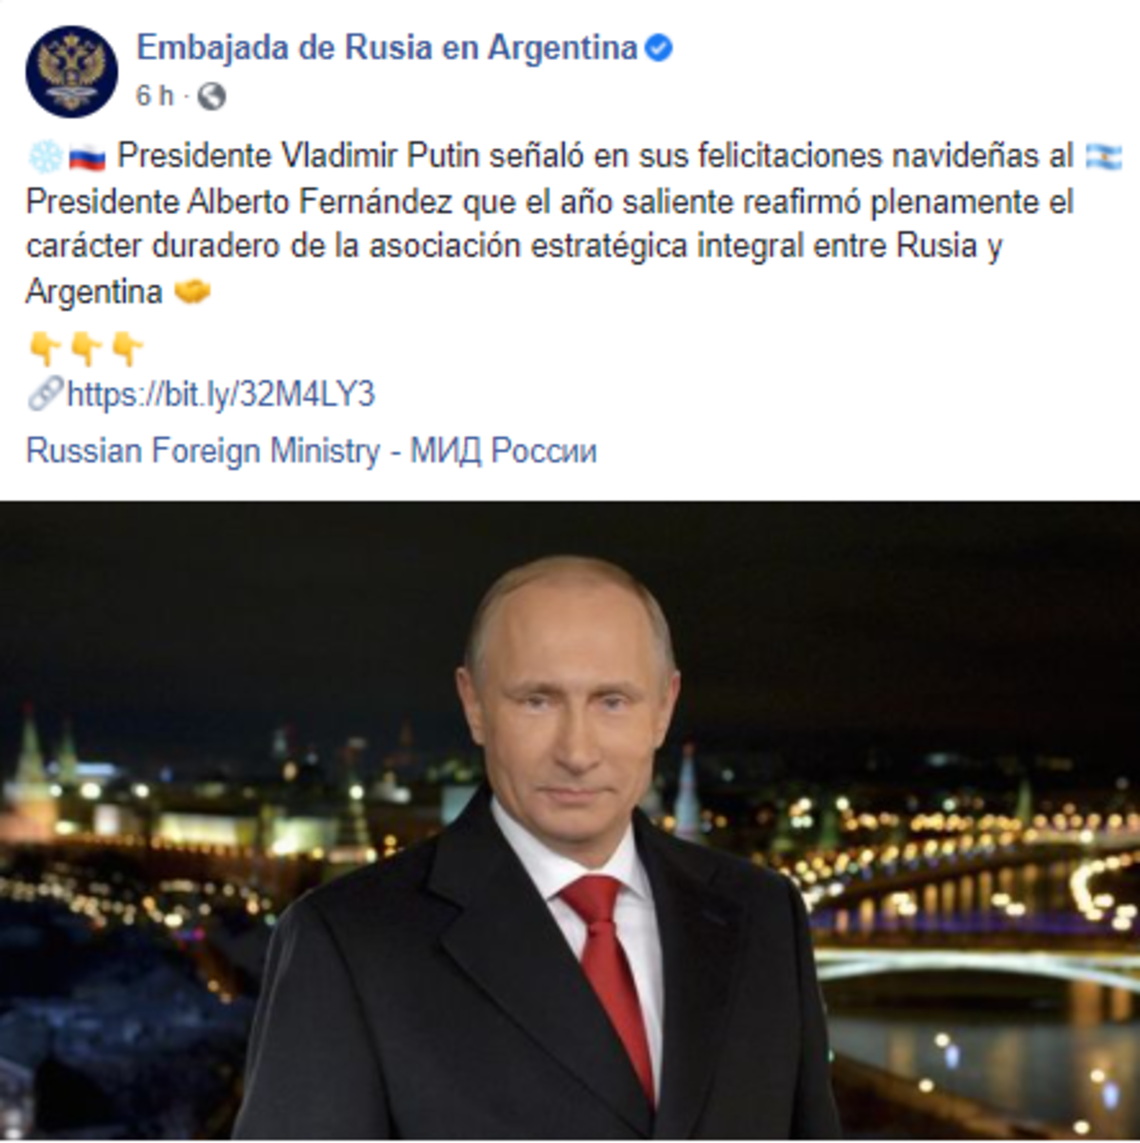 La salutación de Putin a Fernández fue destacada por la Embajada de Rusia en Buenos Aires.